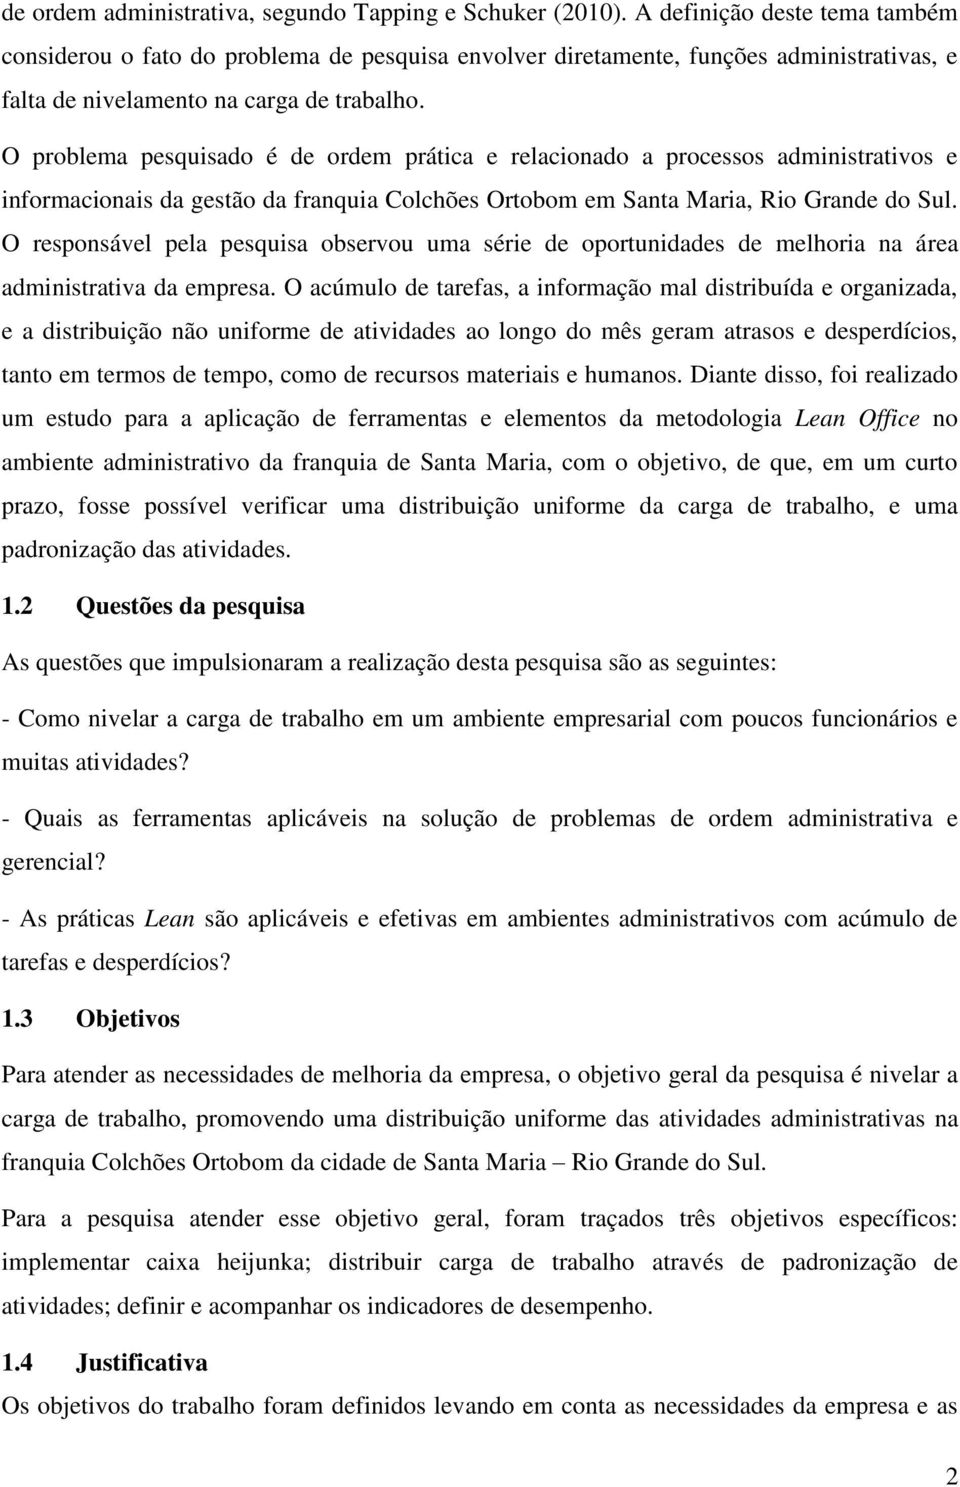 O problema pesquisado é de ordem prática e relacionado a processos administrativos e informacionais da gestão da franquia Colchões Ortobom em Santa Maria, Rio Grande do Sul.